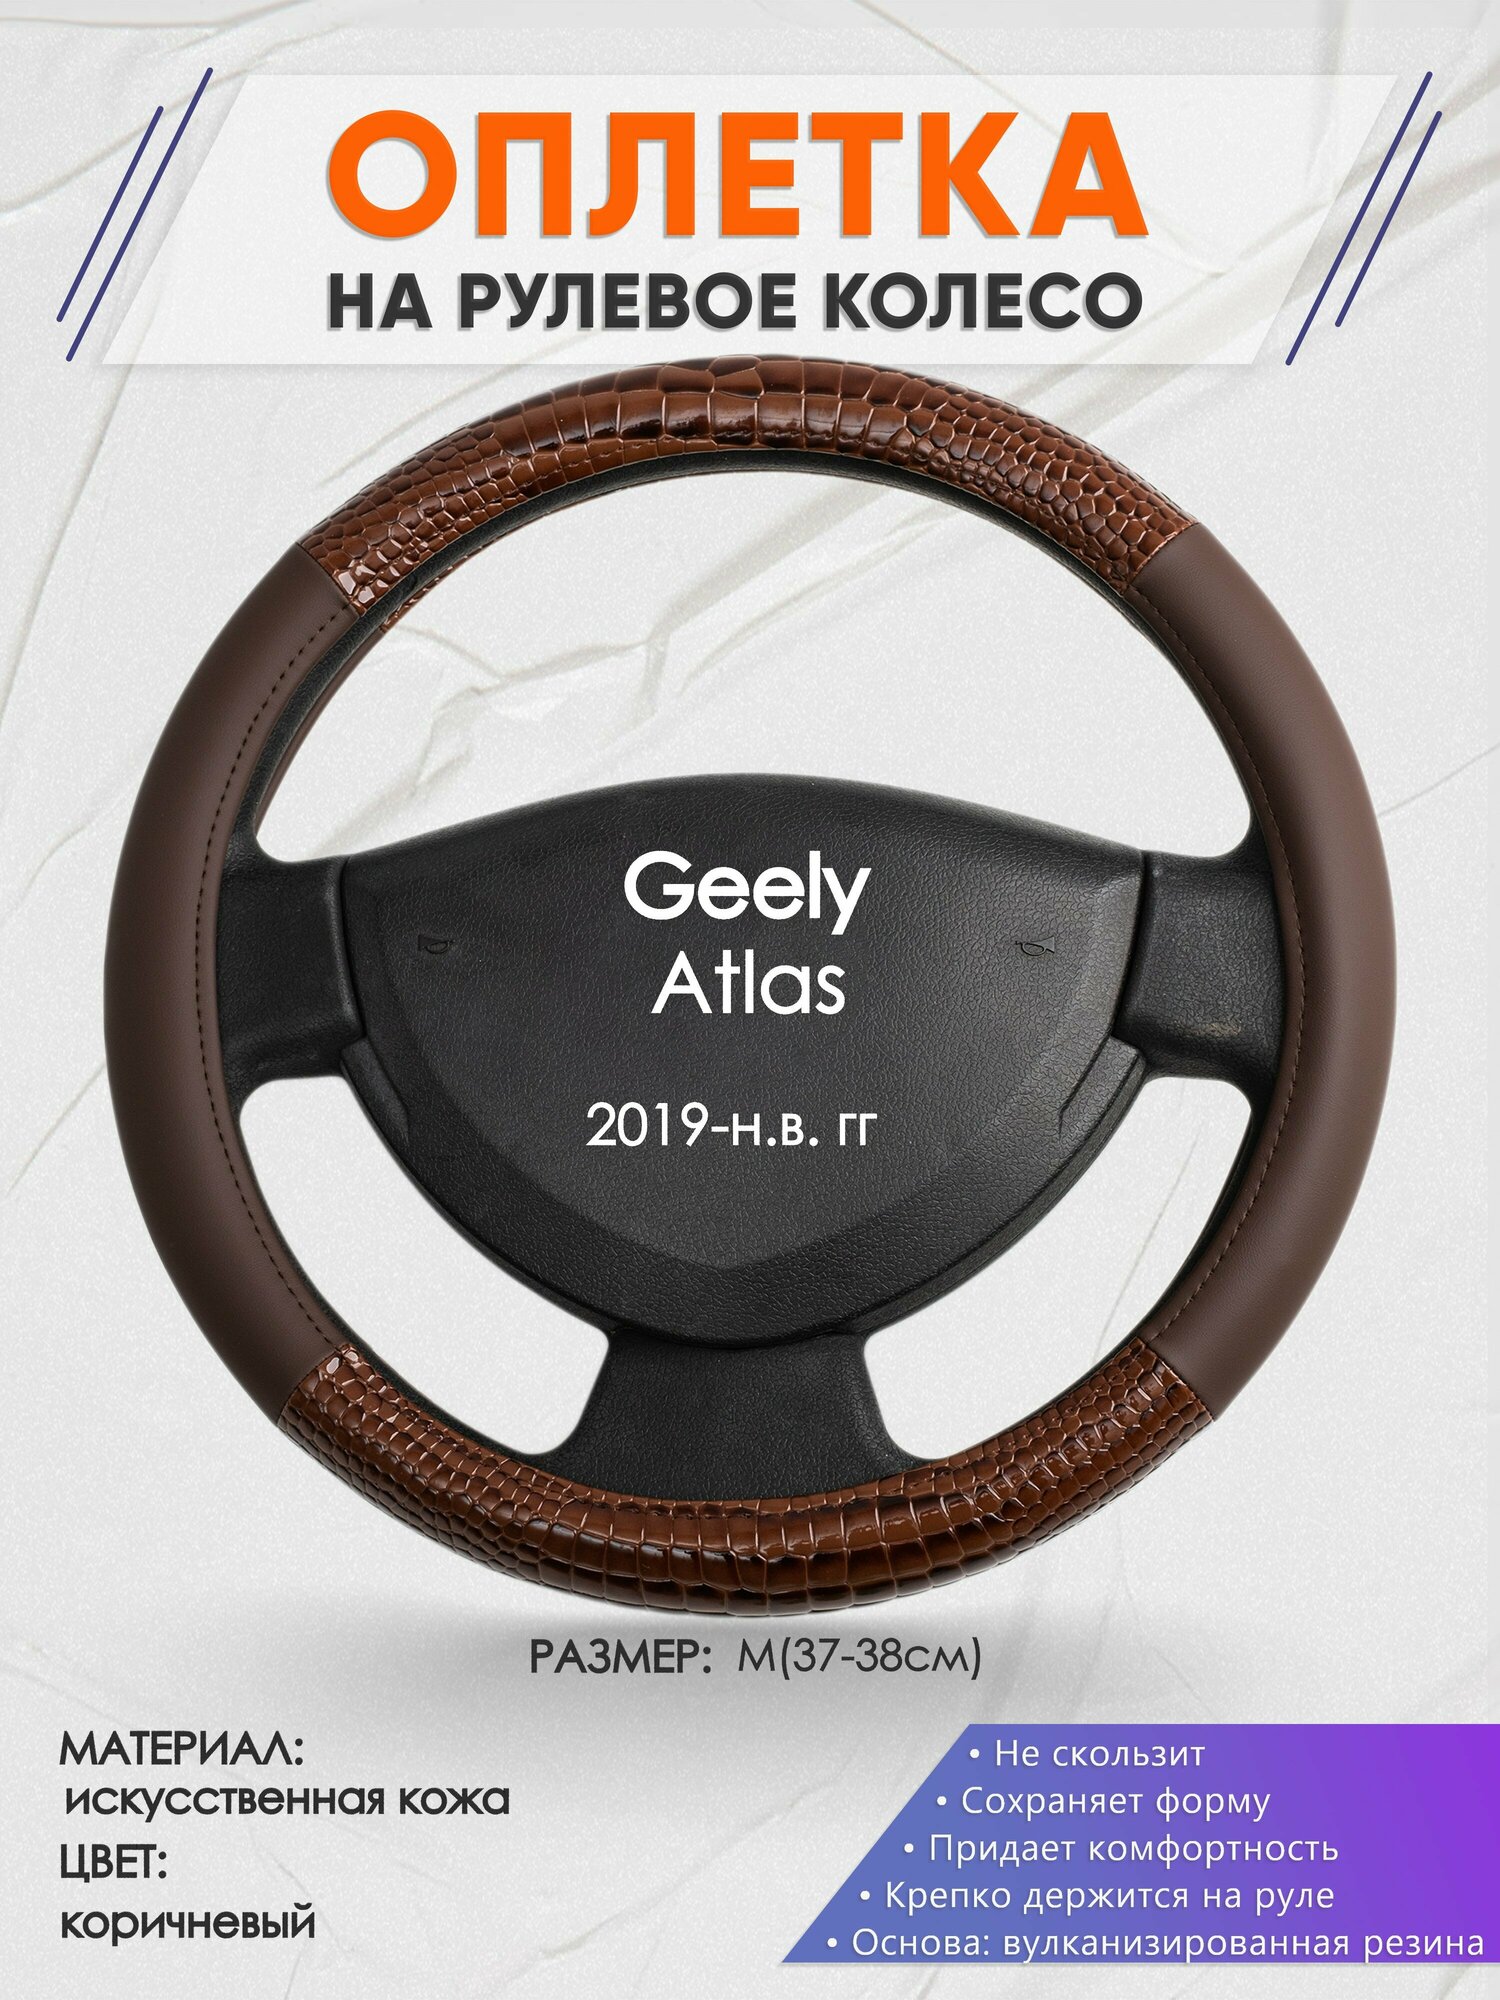 Оплетка на руль для Geely Atlas (Джили Атлас) 2019-н. в, M(37-38см), Искусственная кожа 85